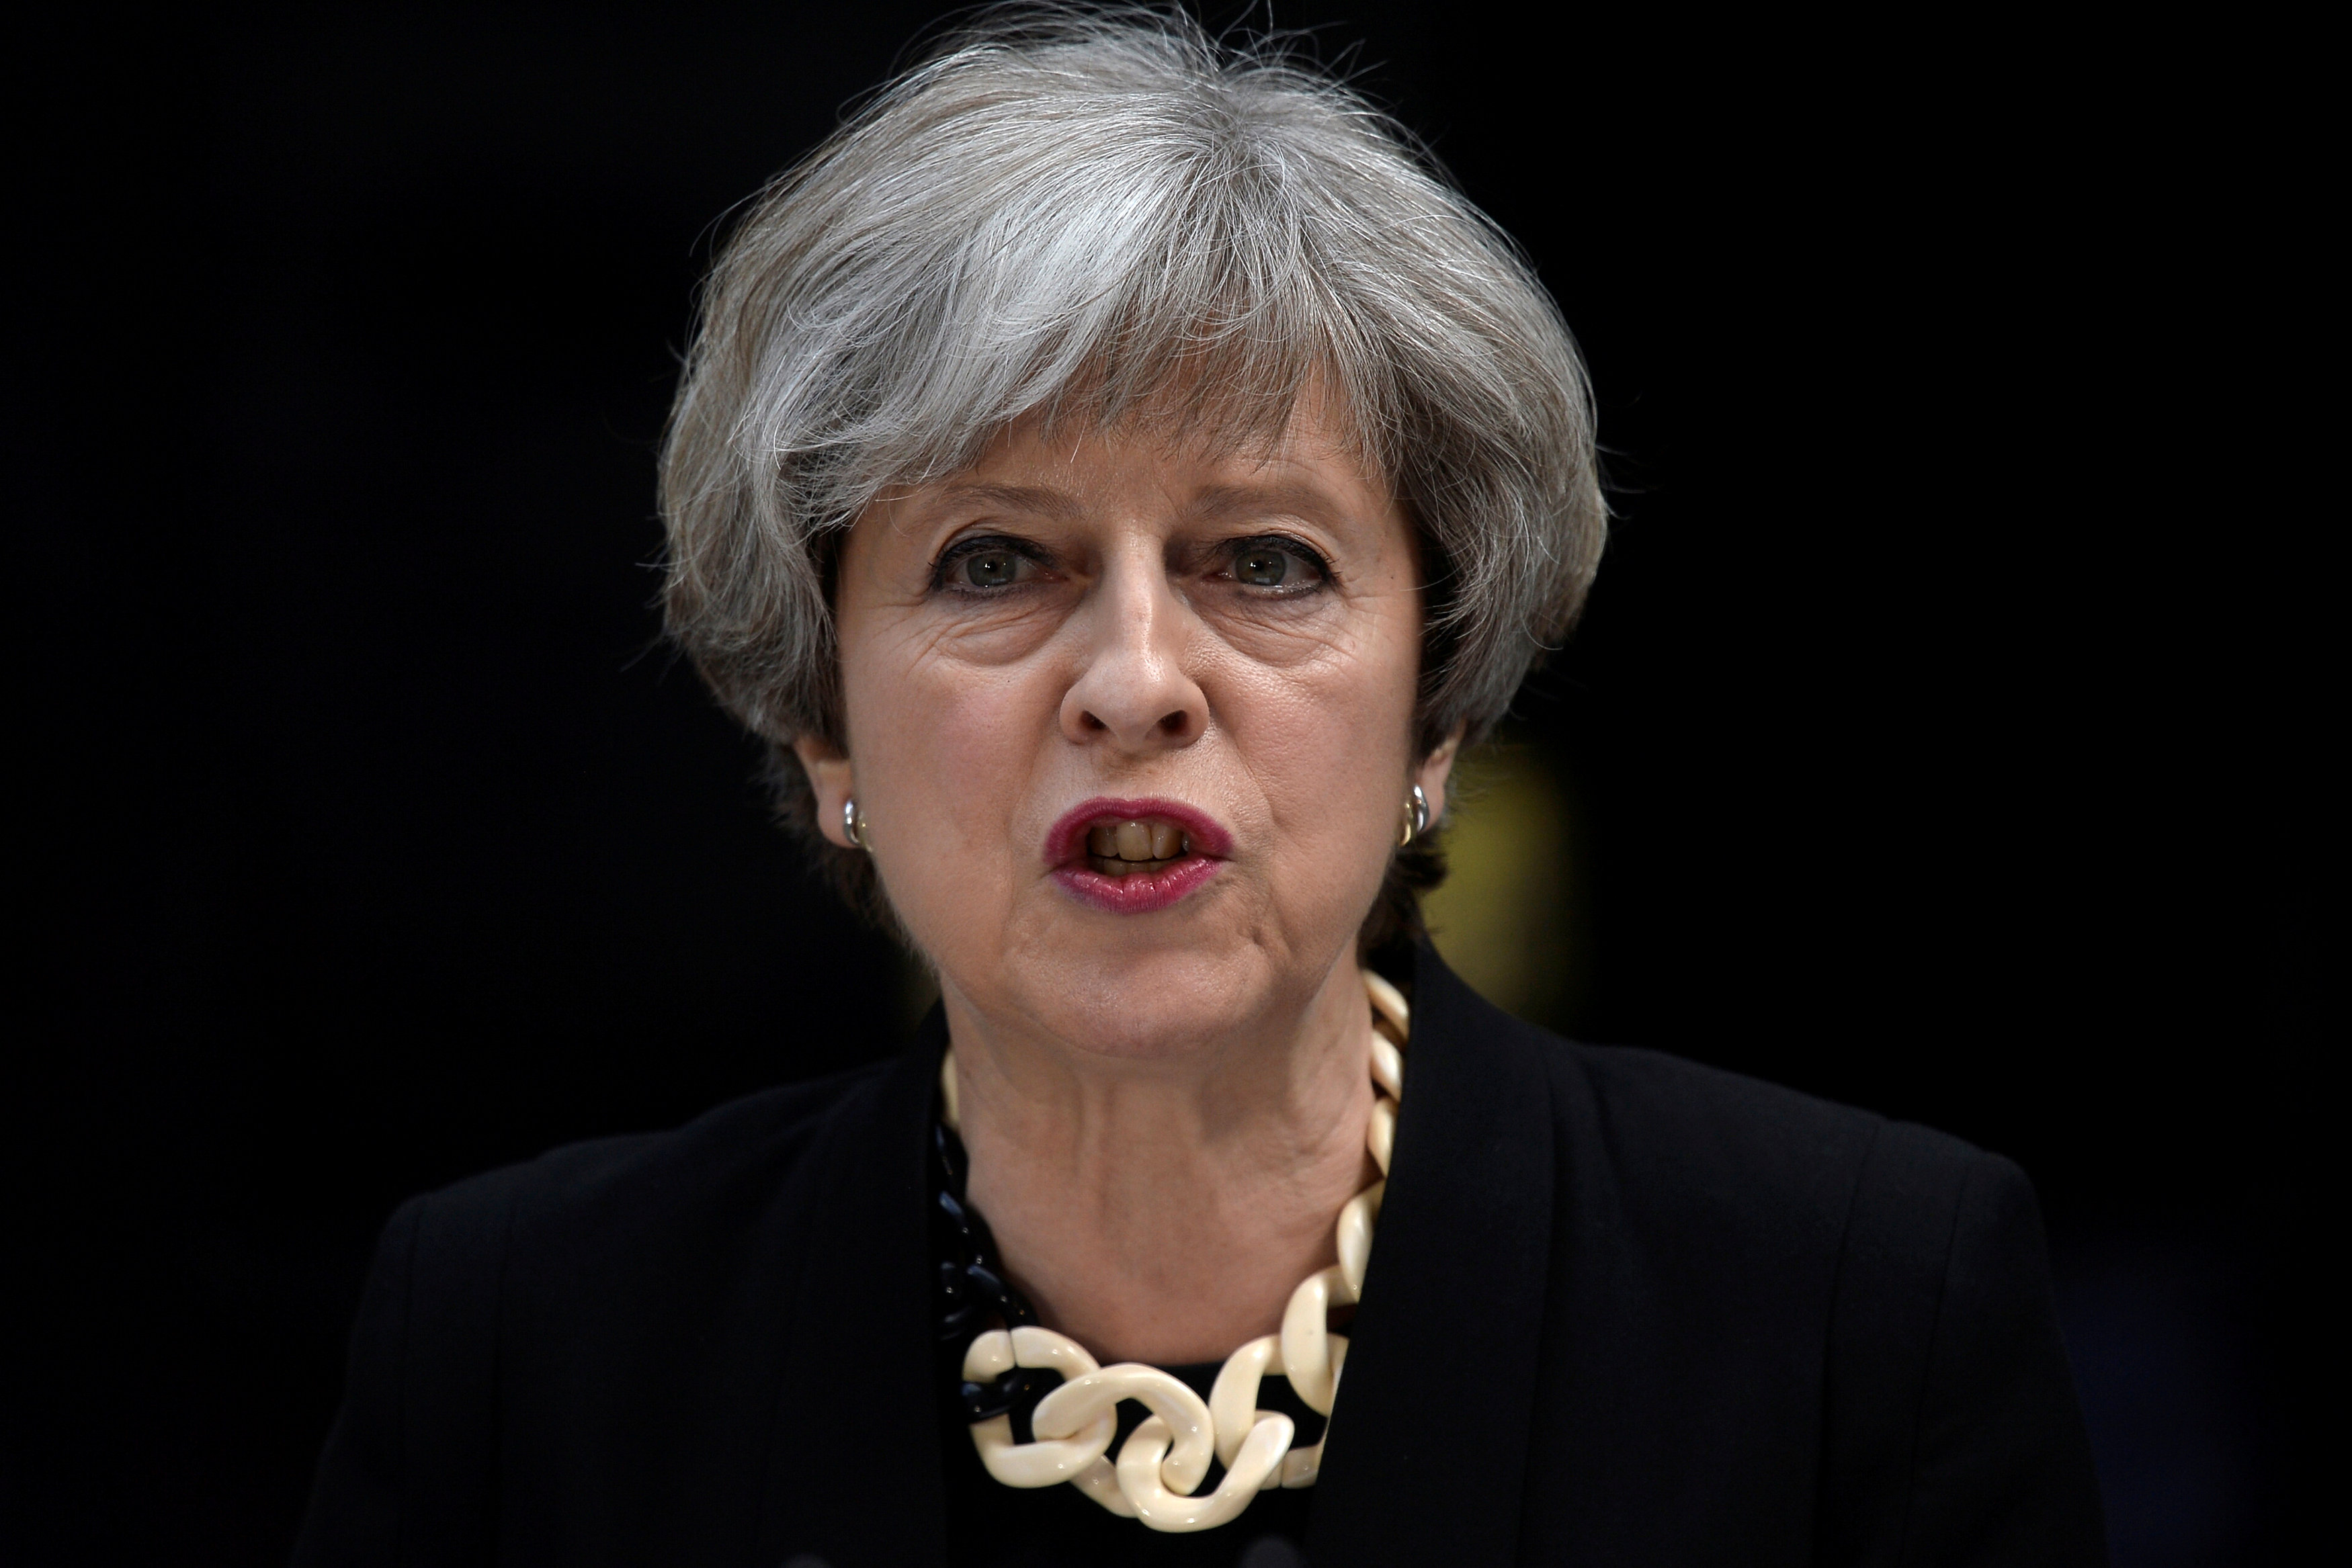 Britain's tumultuous election campaign enters final day